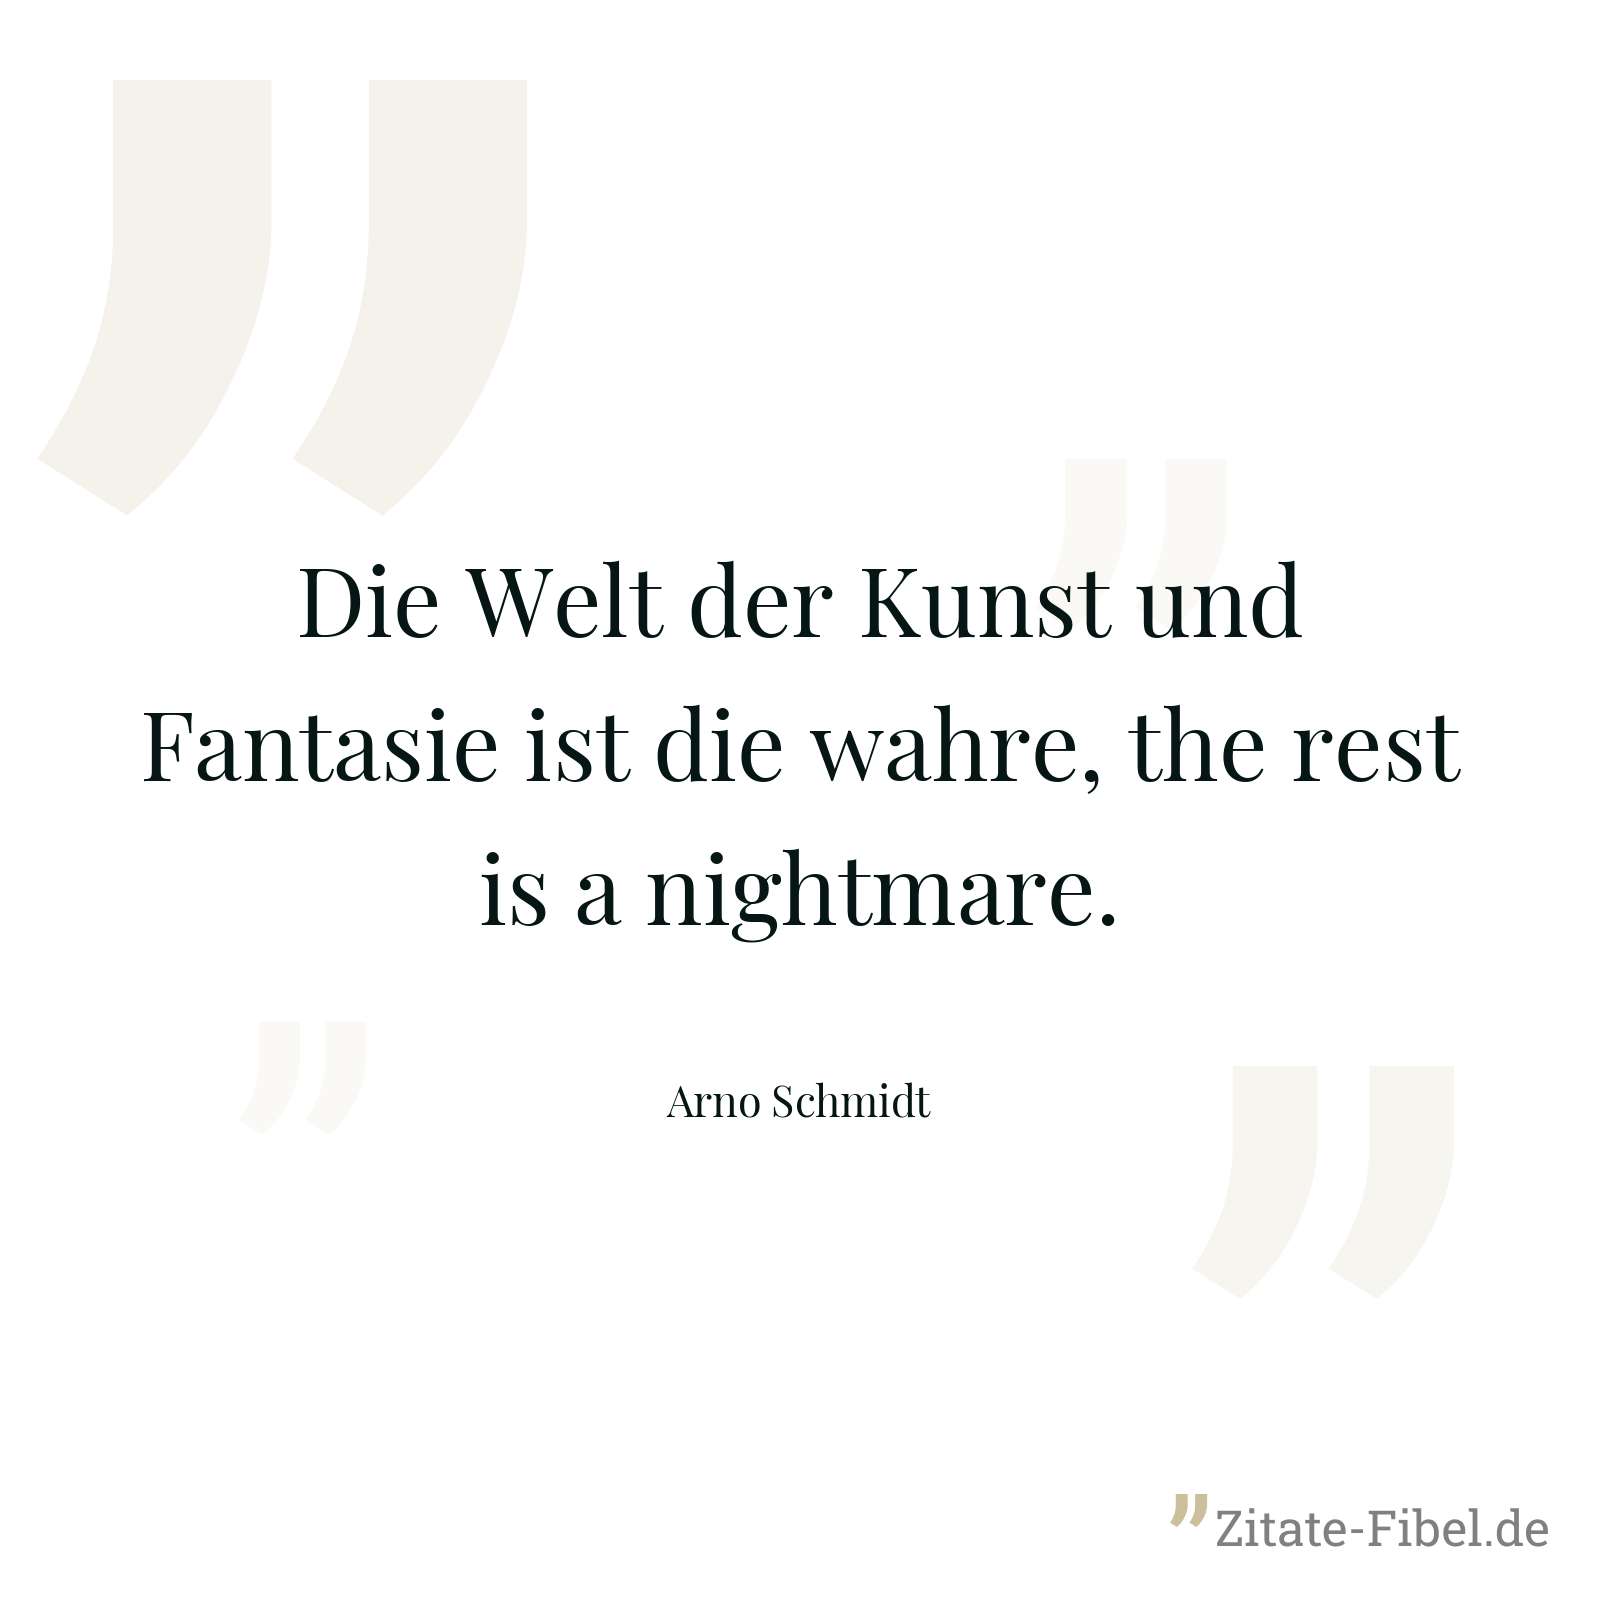 Die Welt der Kunst und Fantasie ist die wahre, the rest is a nightmare. - Arno Schmidt